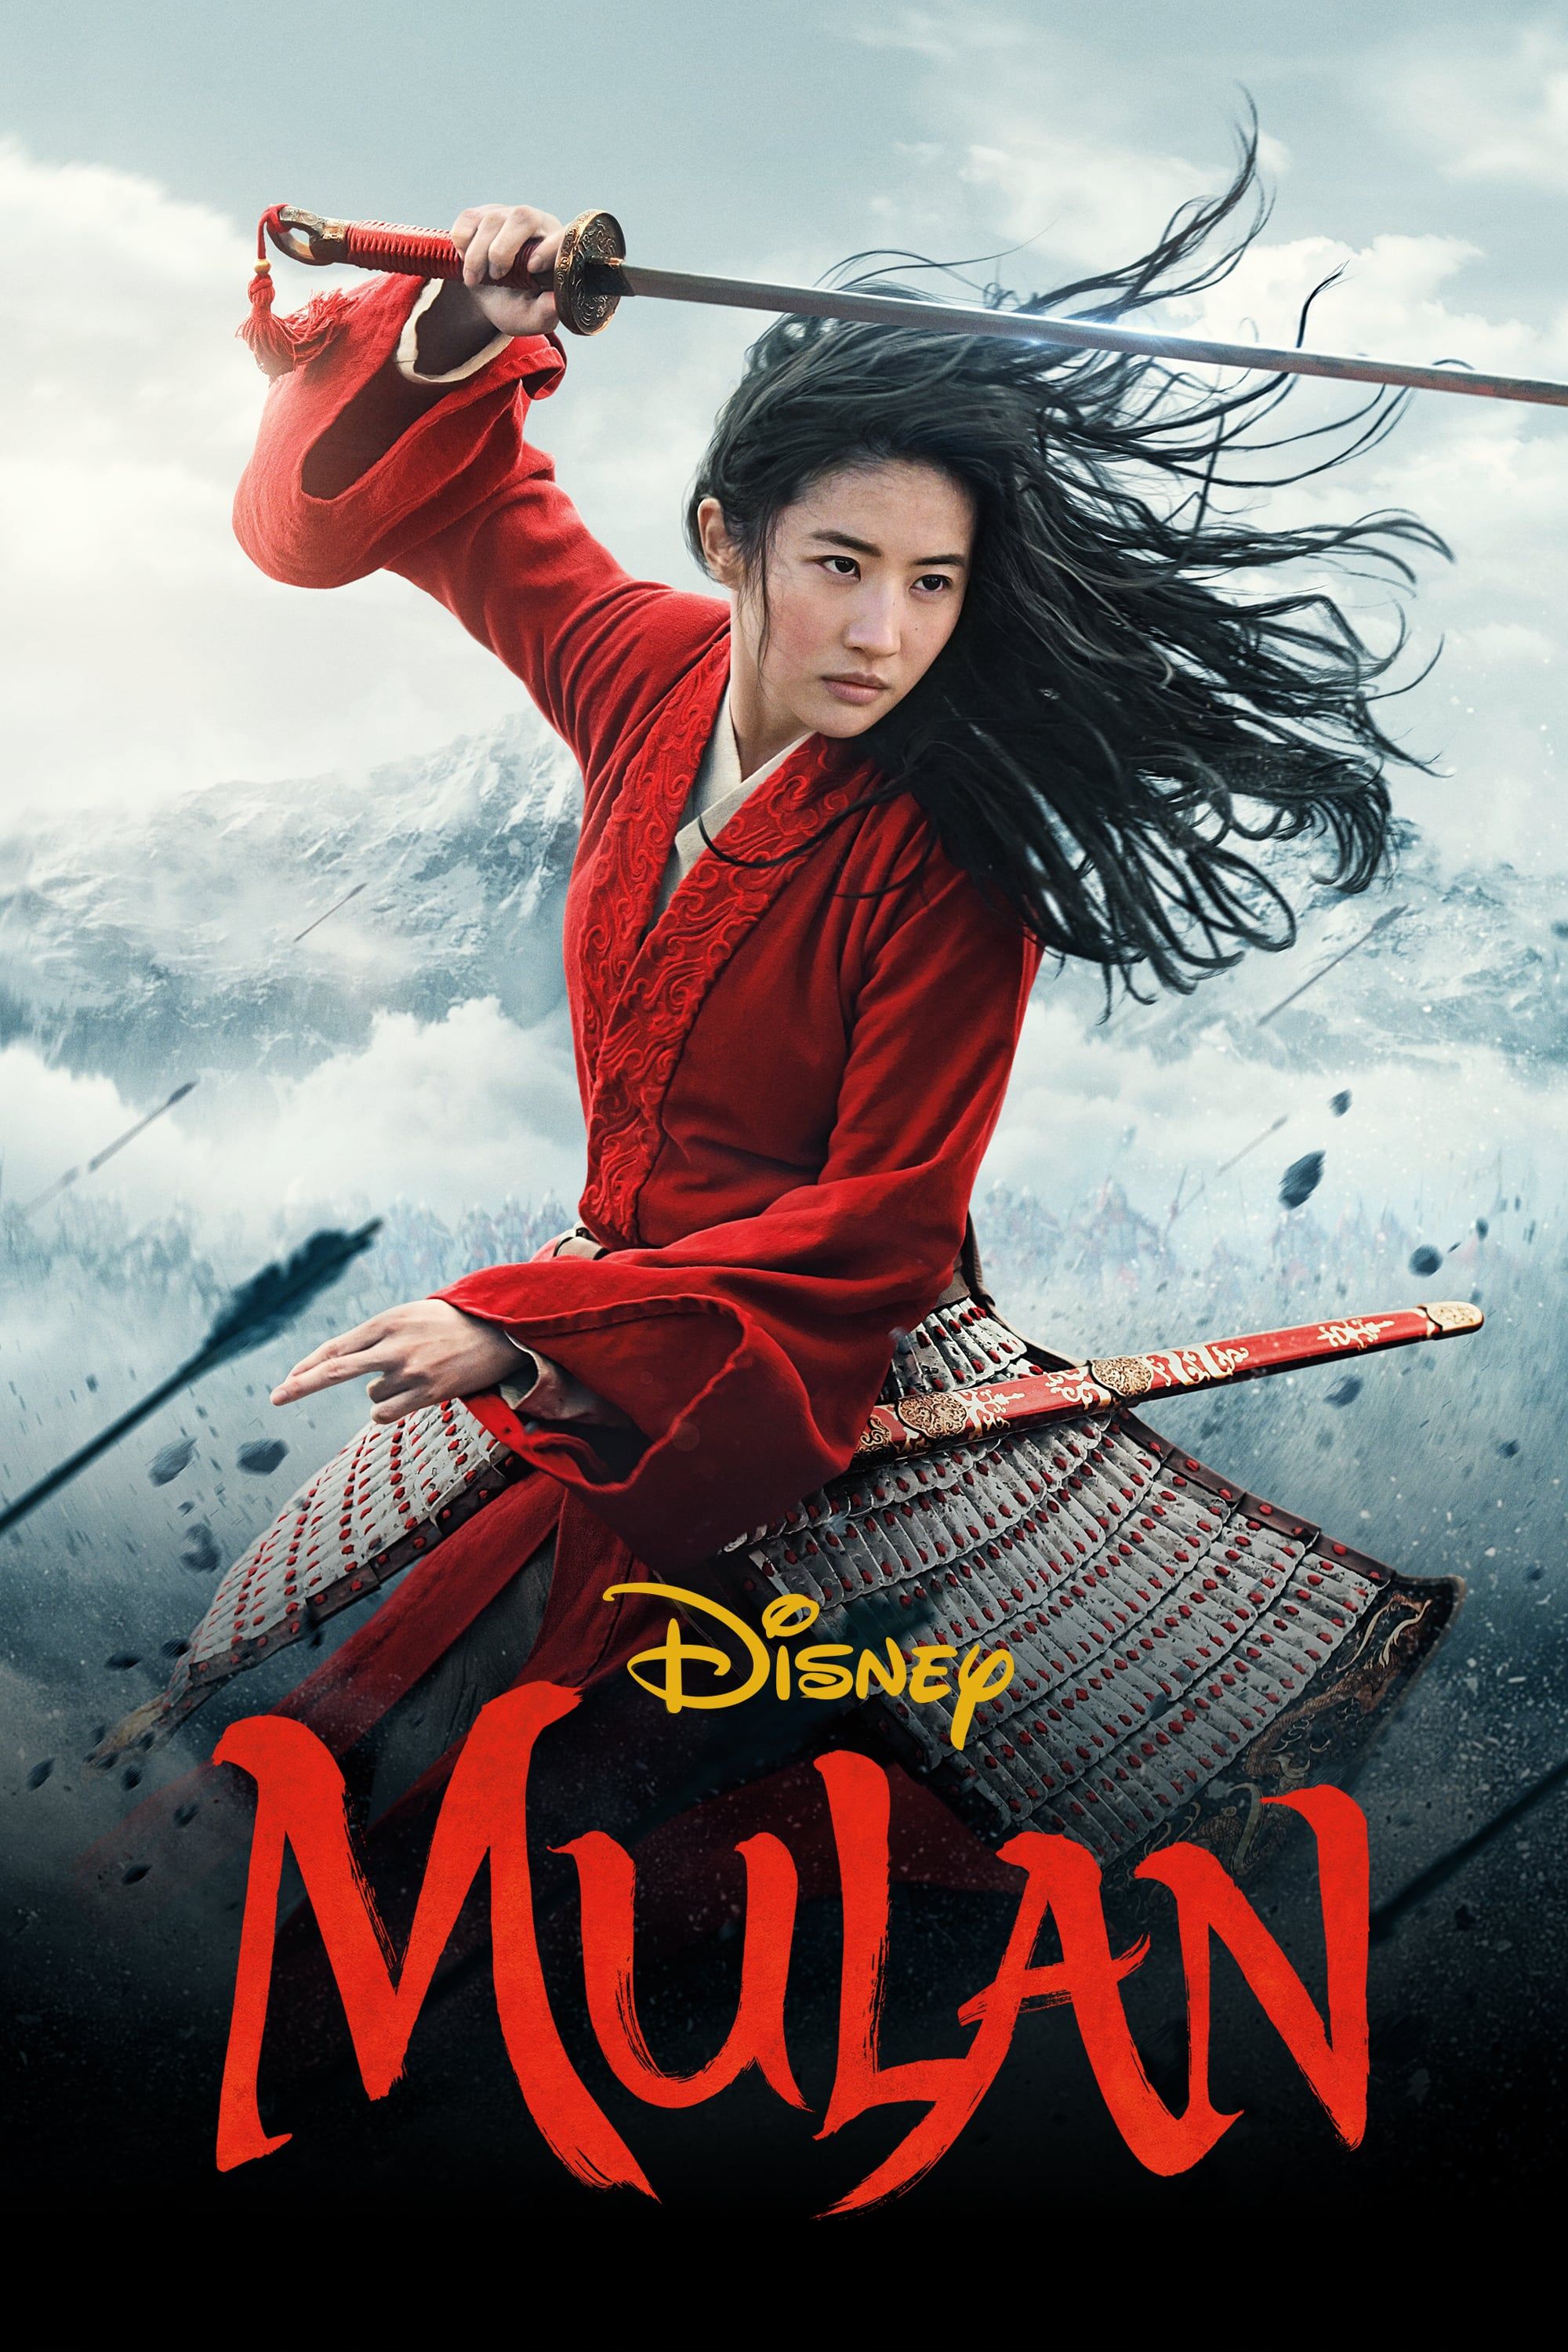 Affiches, posters et images de Mulan (2020) - SensCritique